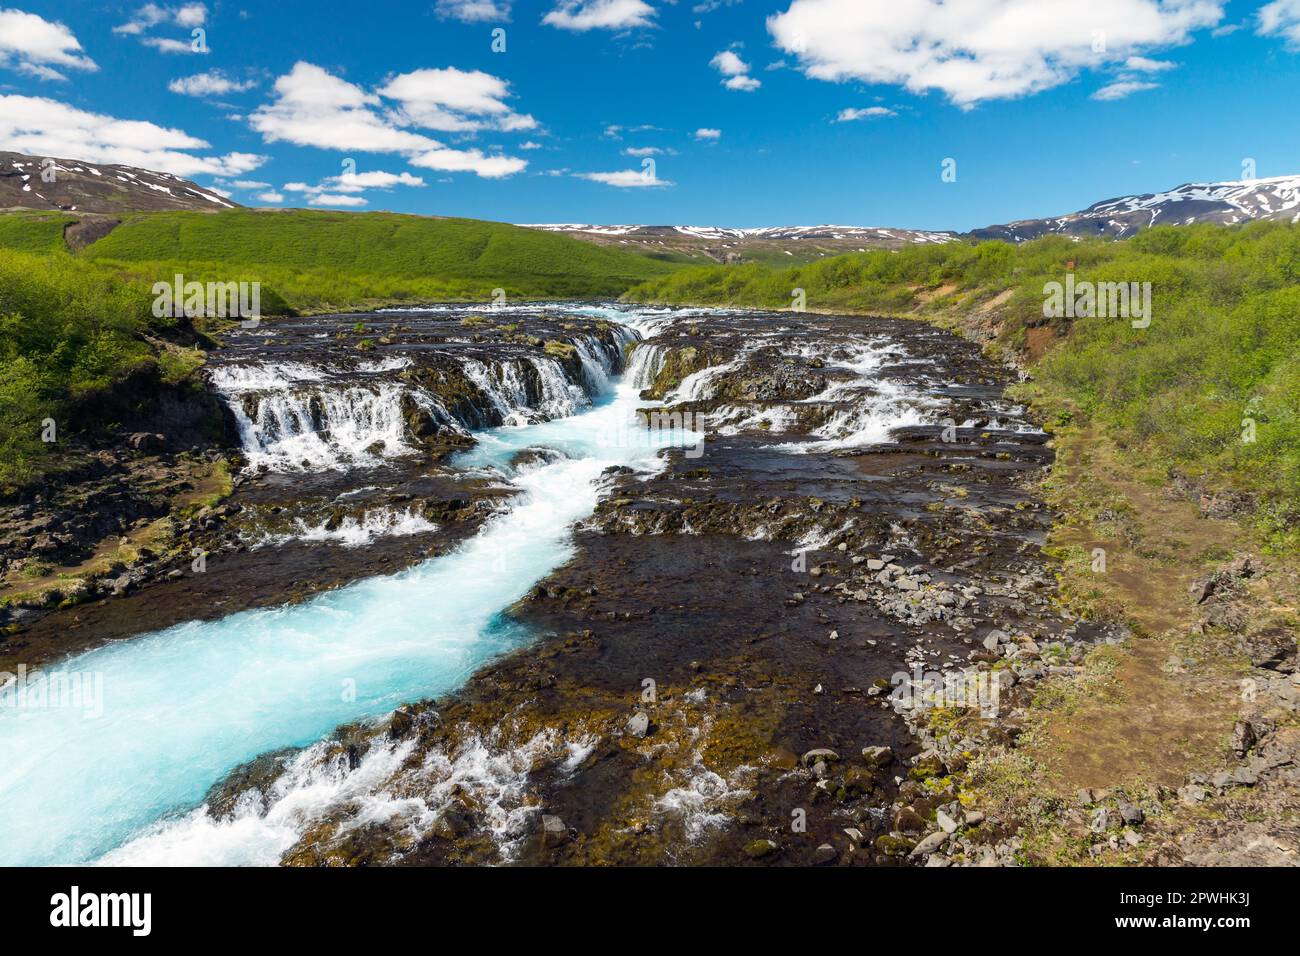 La cascade de Bruarfoss en Islande avec son eau turquoise Banque D'Images